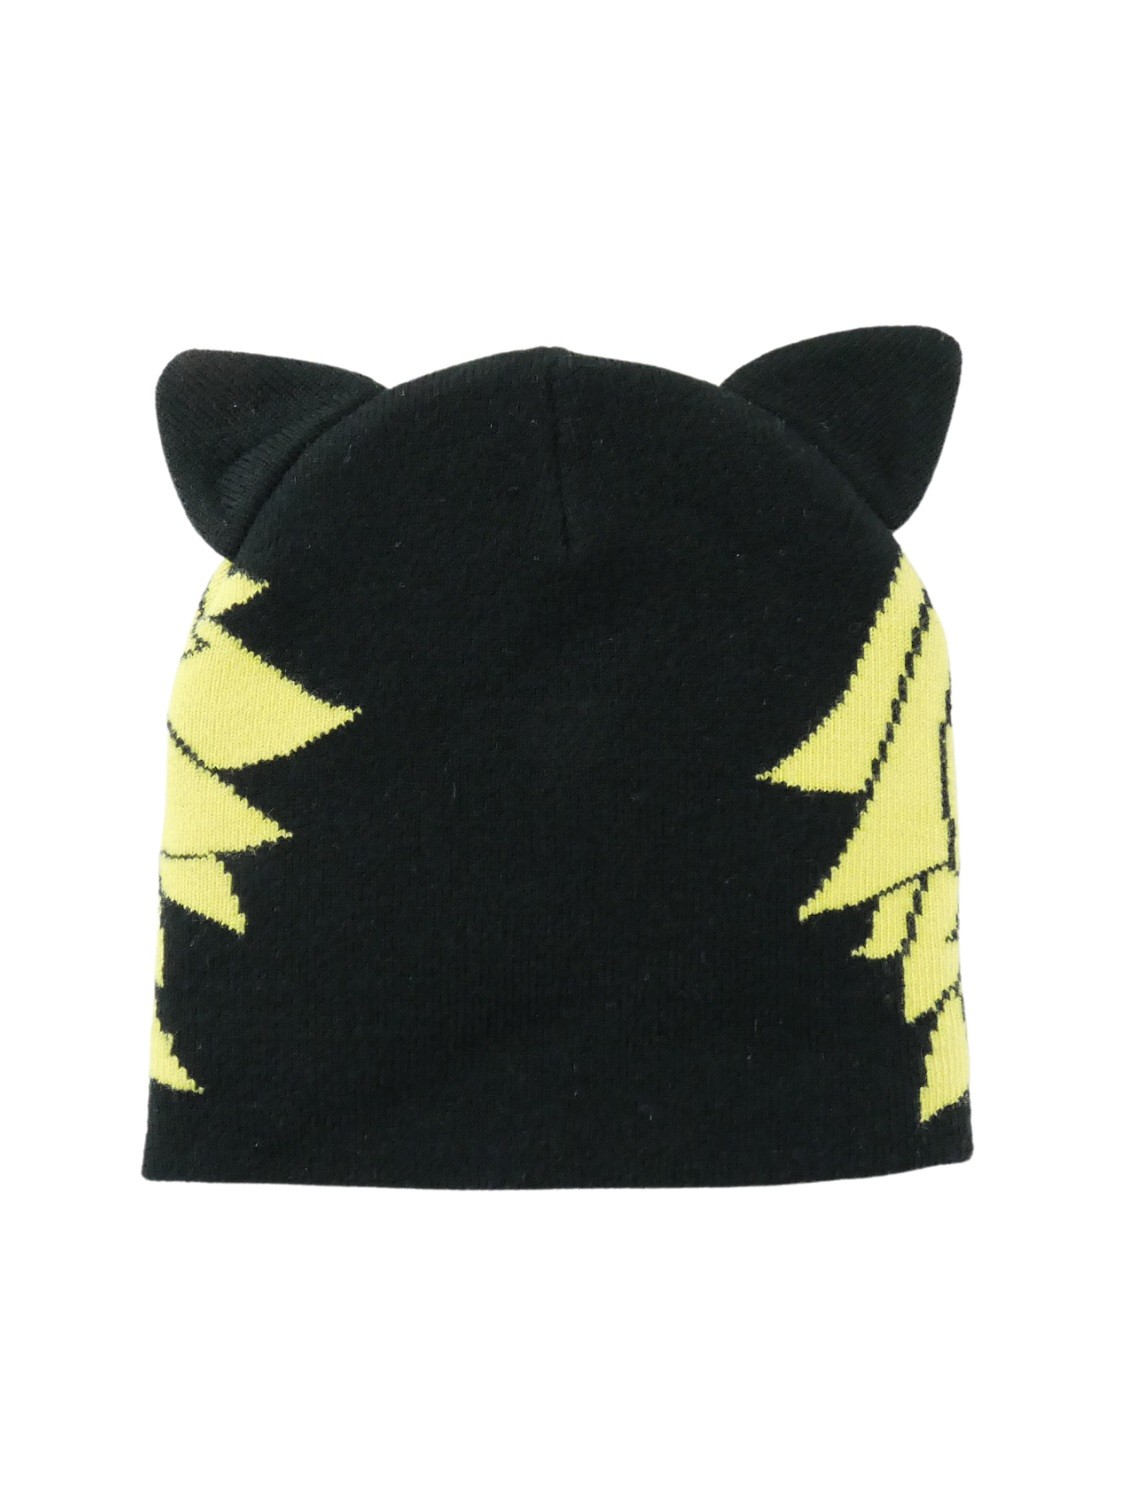 Bonnet chat noir pour bébé taille 3 - 6 mois, tricoté main